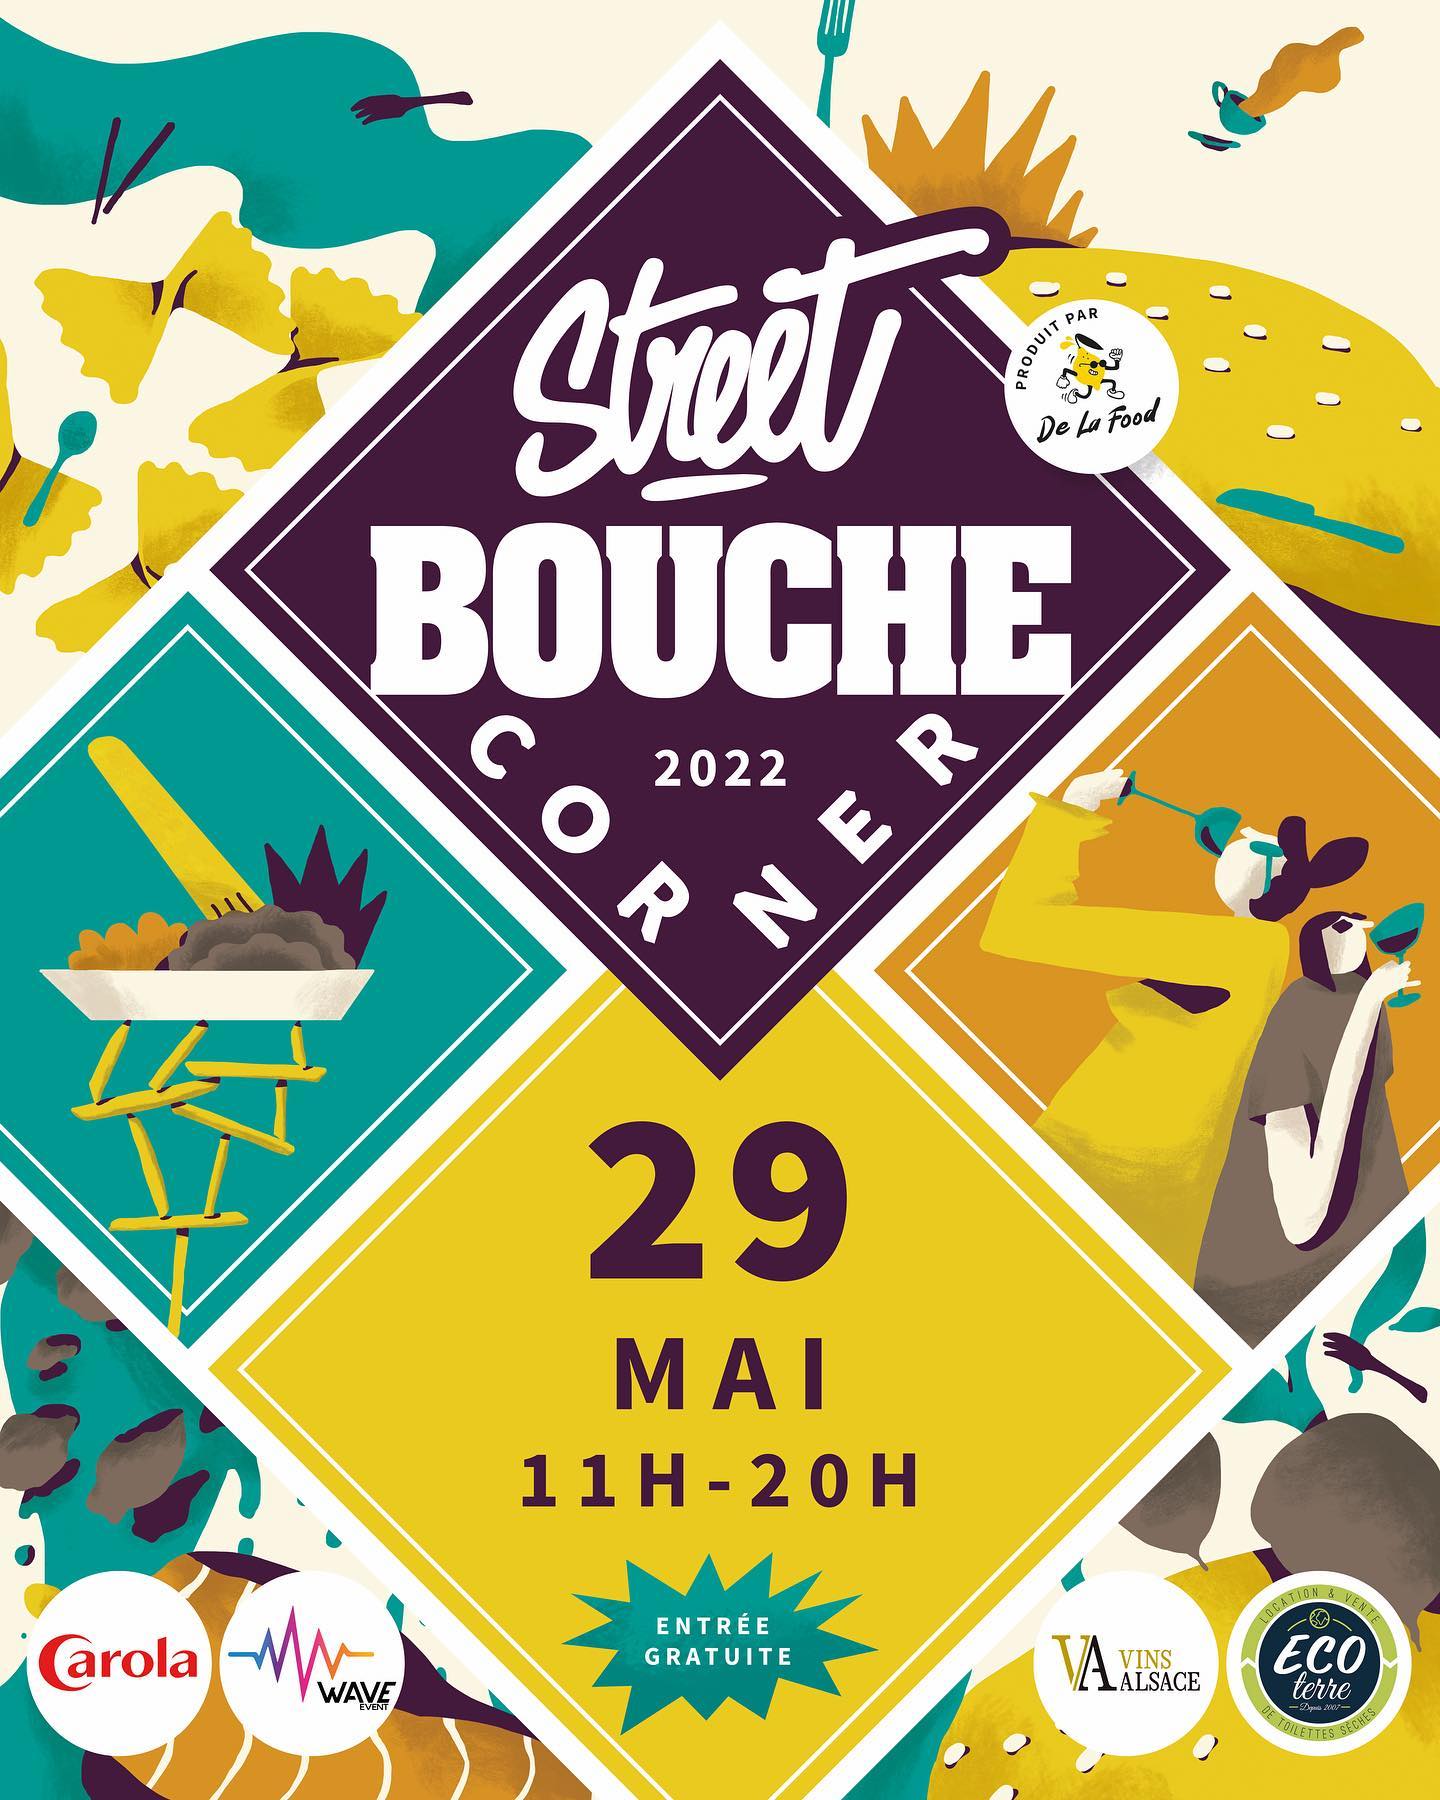 streetbouche corner place de zurich strasbourg mai 2022 - Street Bouche